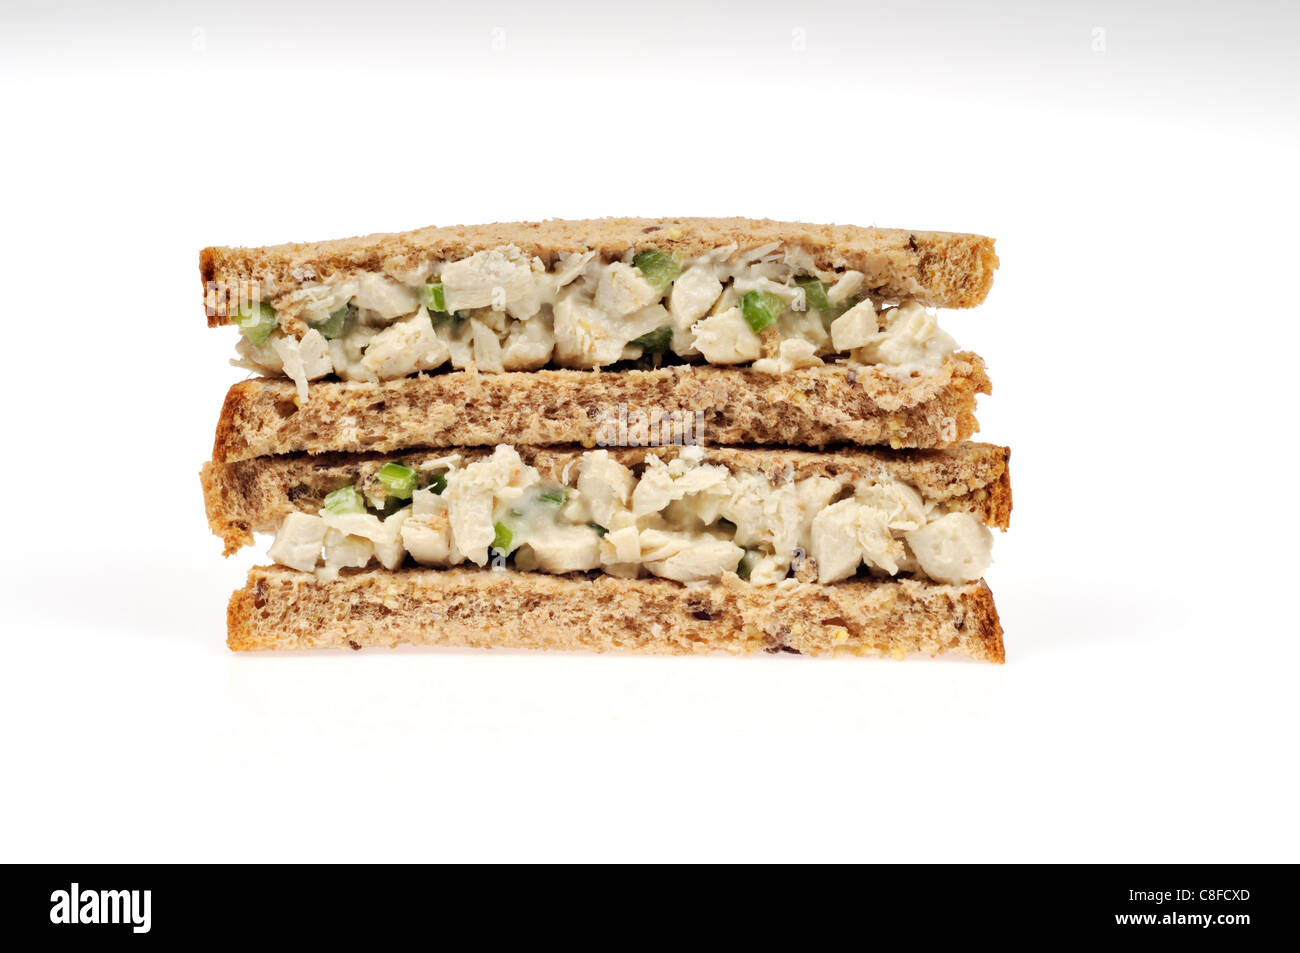 Insalata di pollo con sandwich di sedano & mayo il pane scuro di farina integrale su sfondo bianco ritaglio. Foto Stock